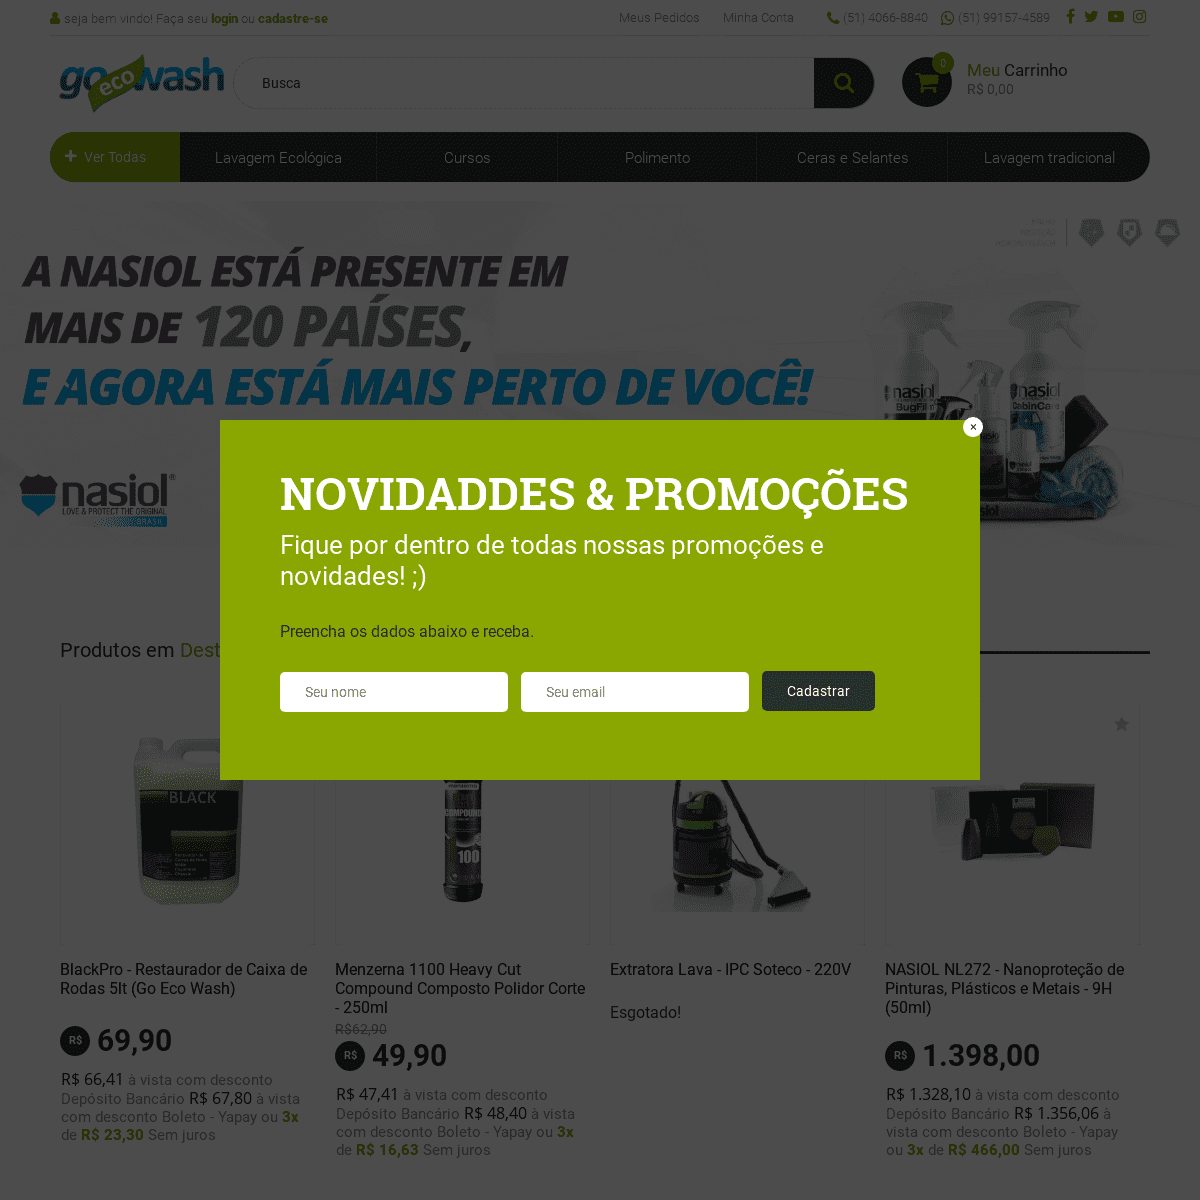 A complete backup of lojagoecowash.com.br